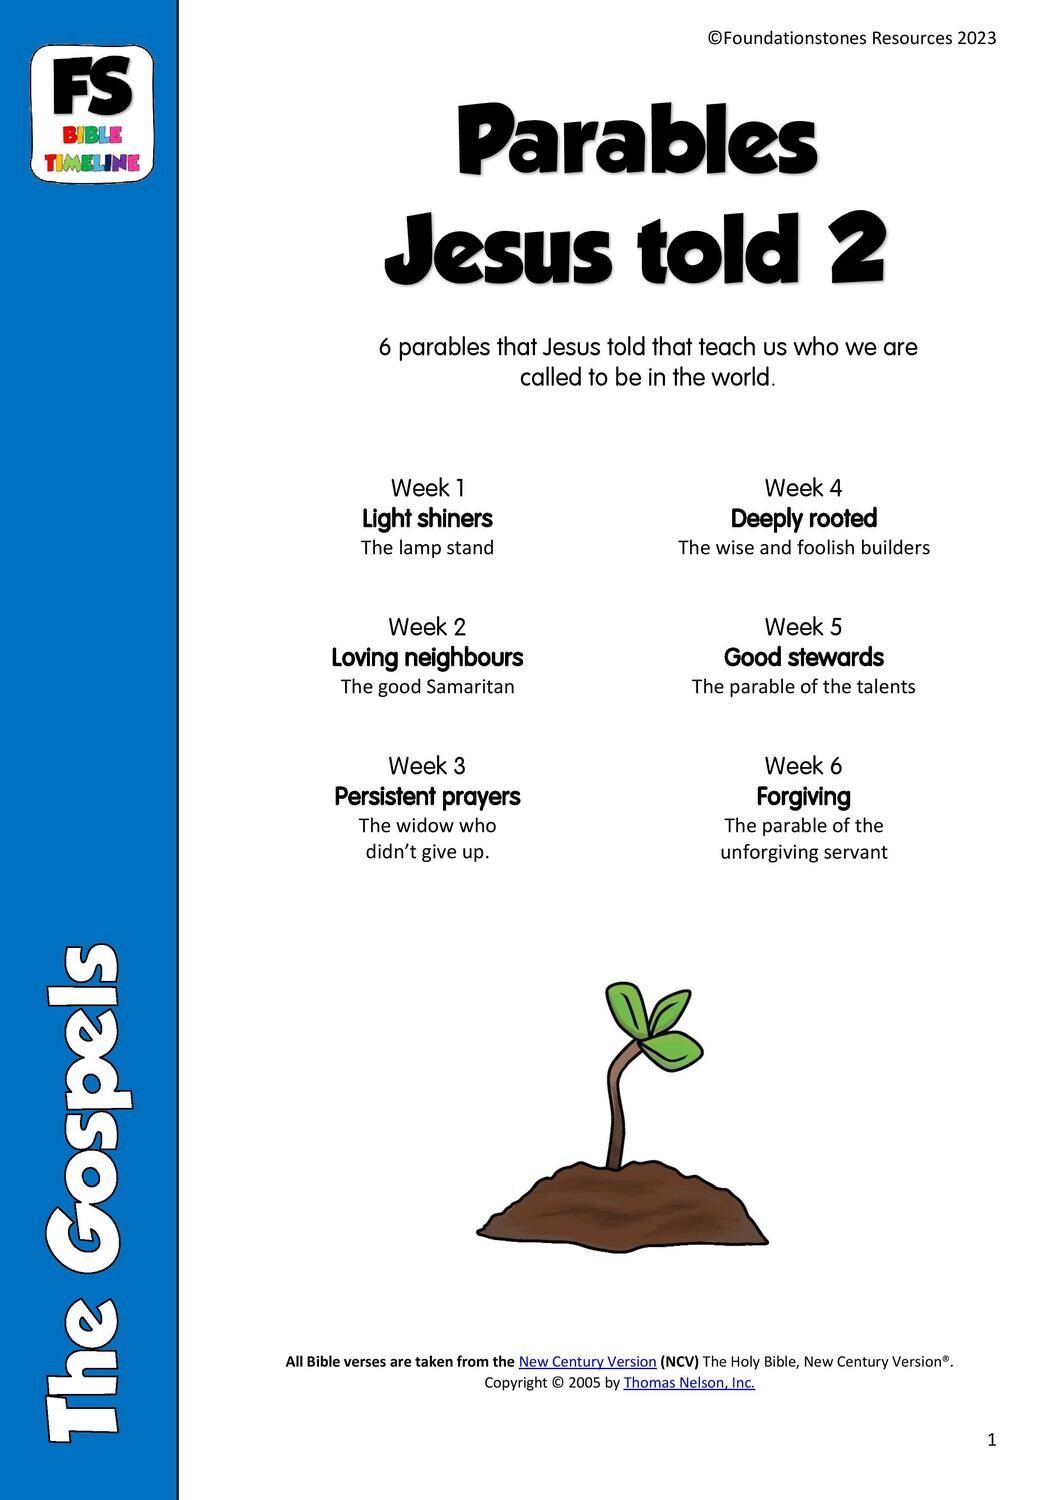 Parables that Jesus told: Series 2- 6 week series